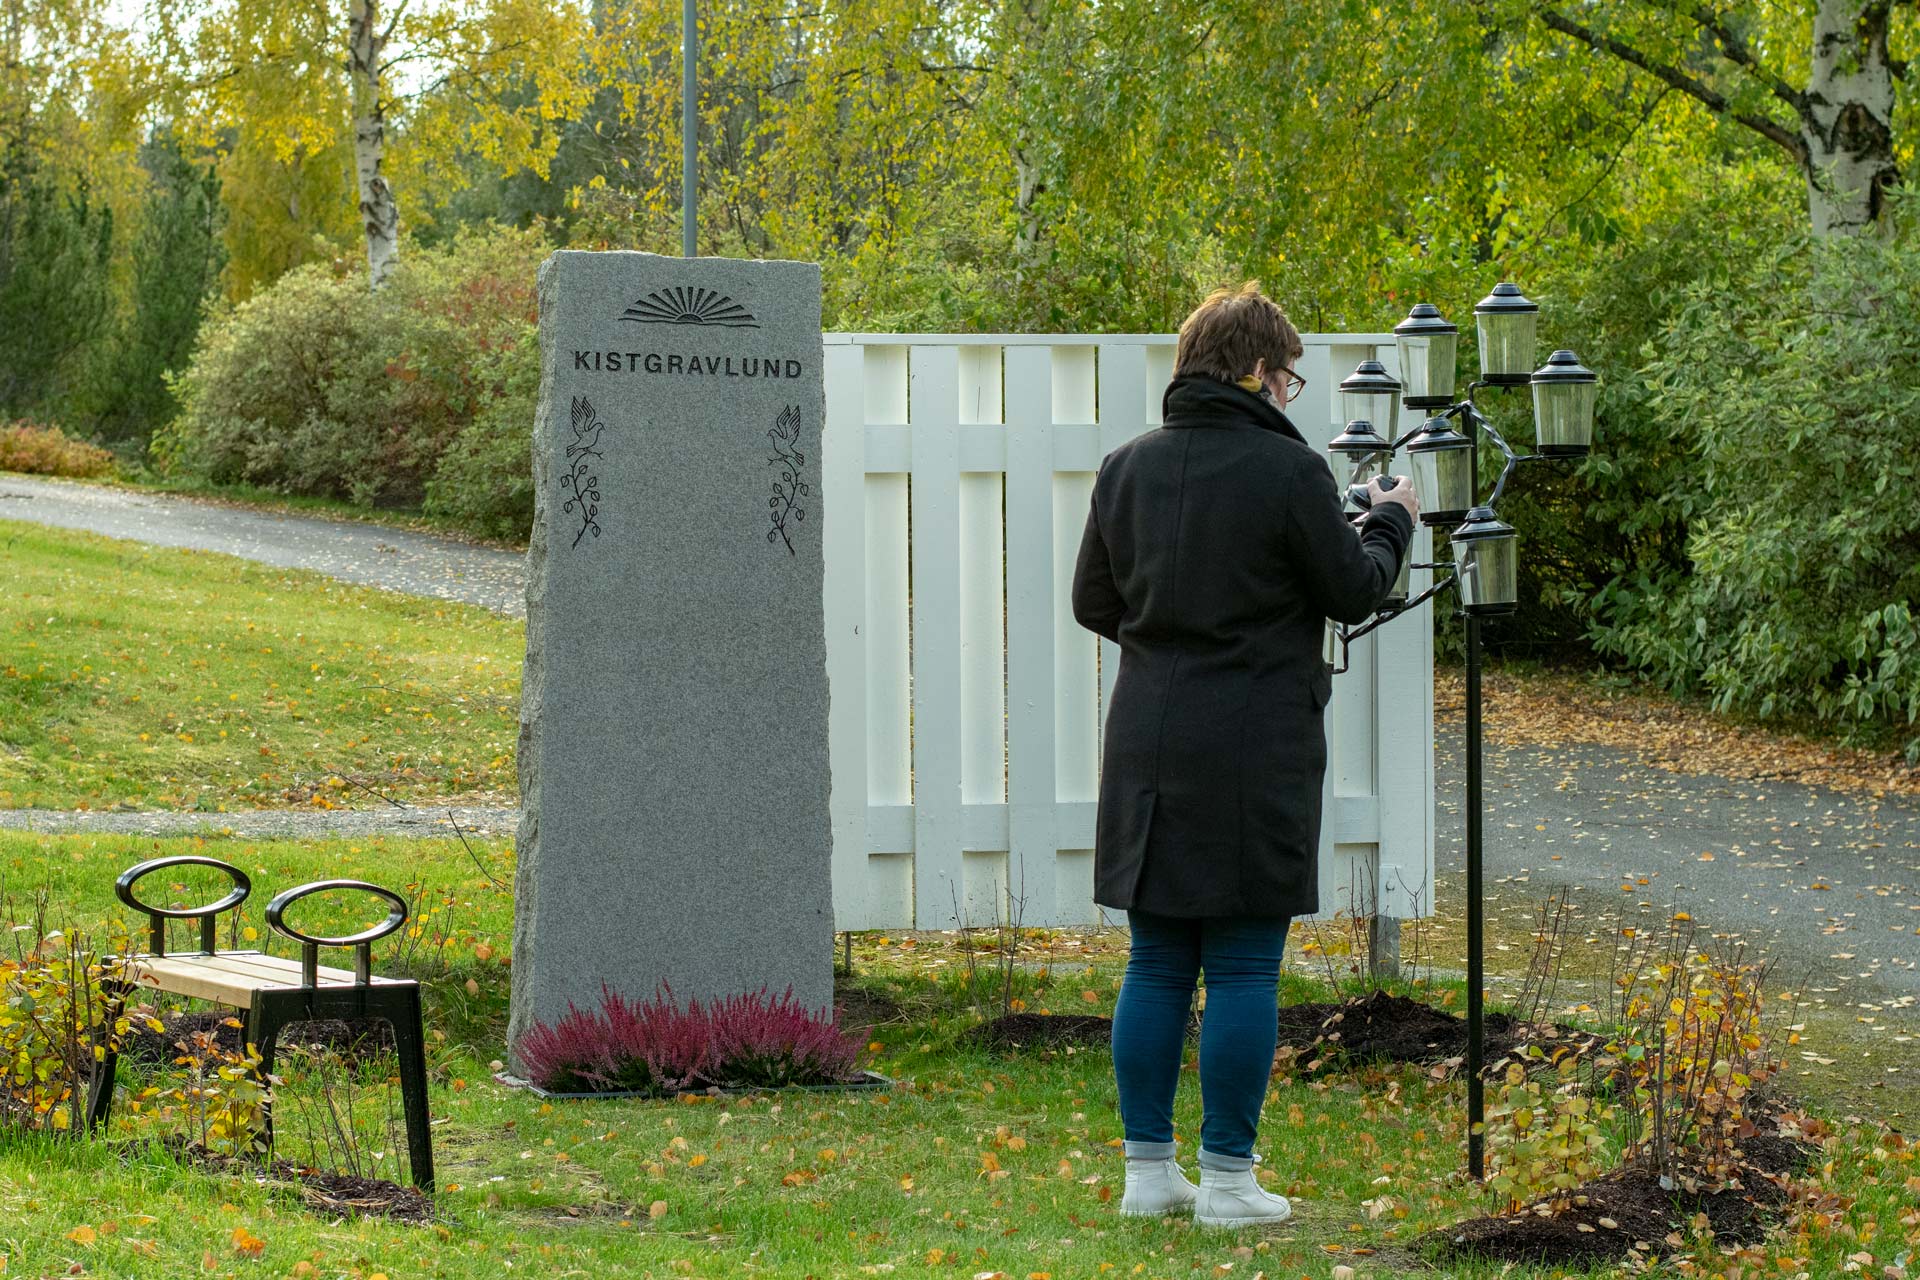 En kvinna står framför en gravsten med texten "Kistgravlund". Hon lyfter på locket till en av ljuslyktorna i en ställning med flera lyktor.  Det är höst.